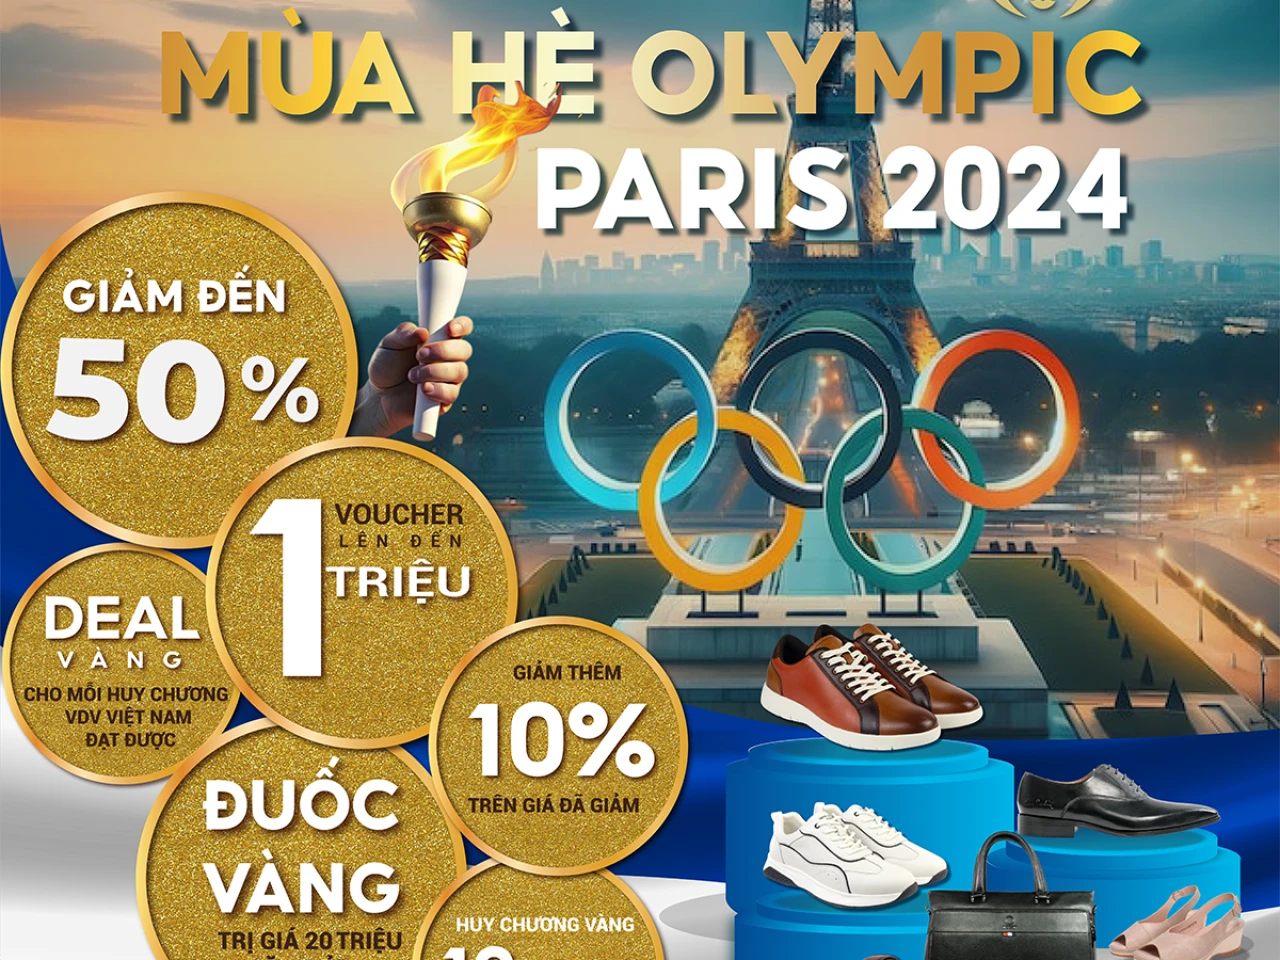 🏆🏟️CHÀO ĐÓN THẾ VẬN HỘI OLYMPIC PARIS 2024 CÙNG PIERRE CARDIN🏅🏟️